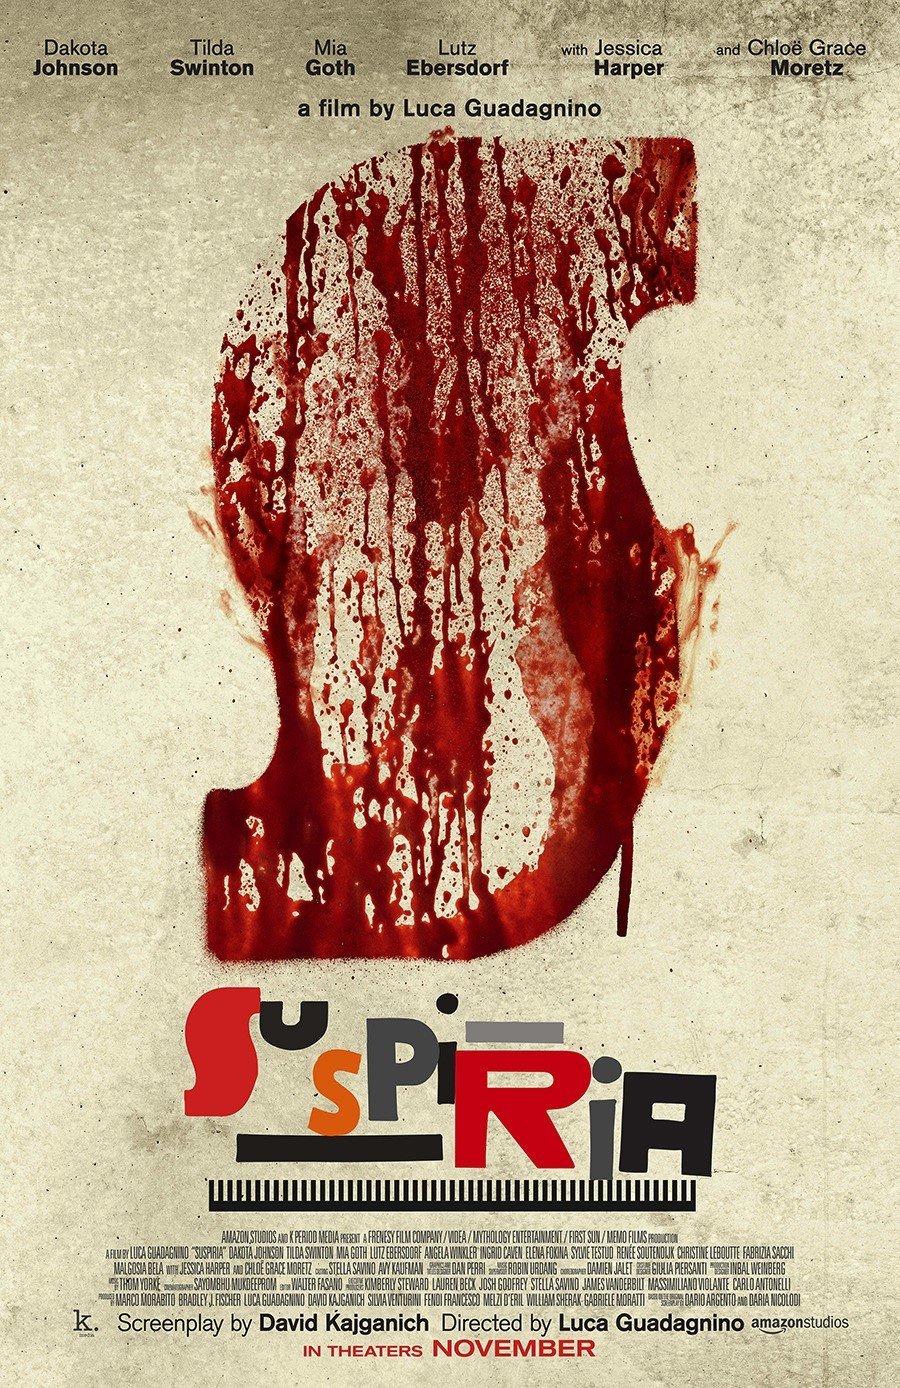 Poster of Amazon Studios' Suspiria (2018)